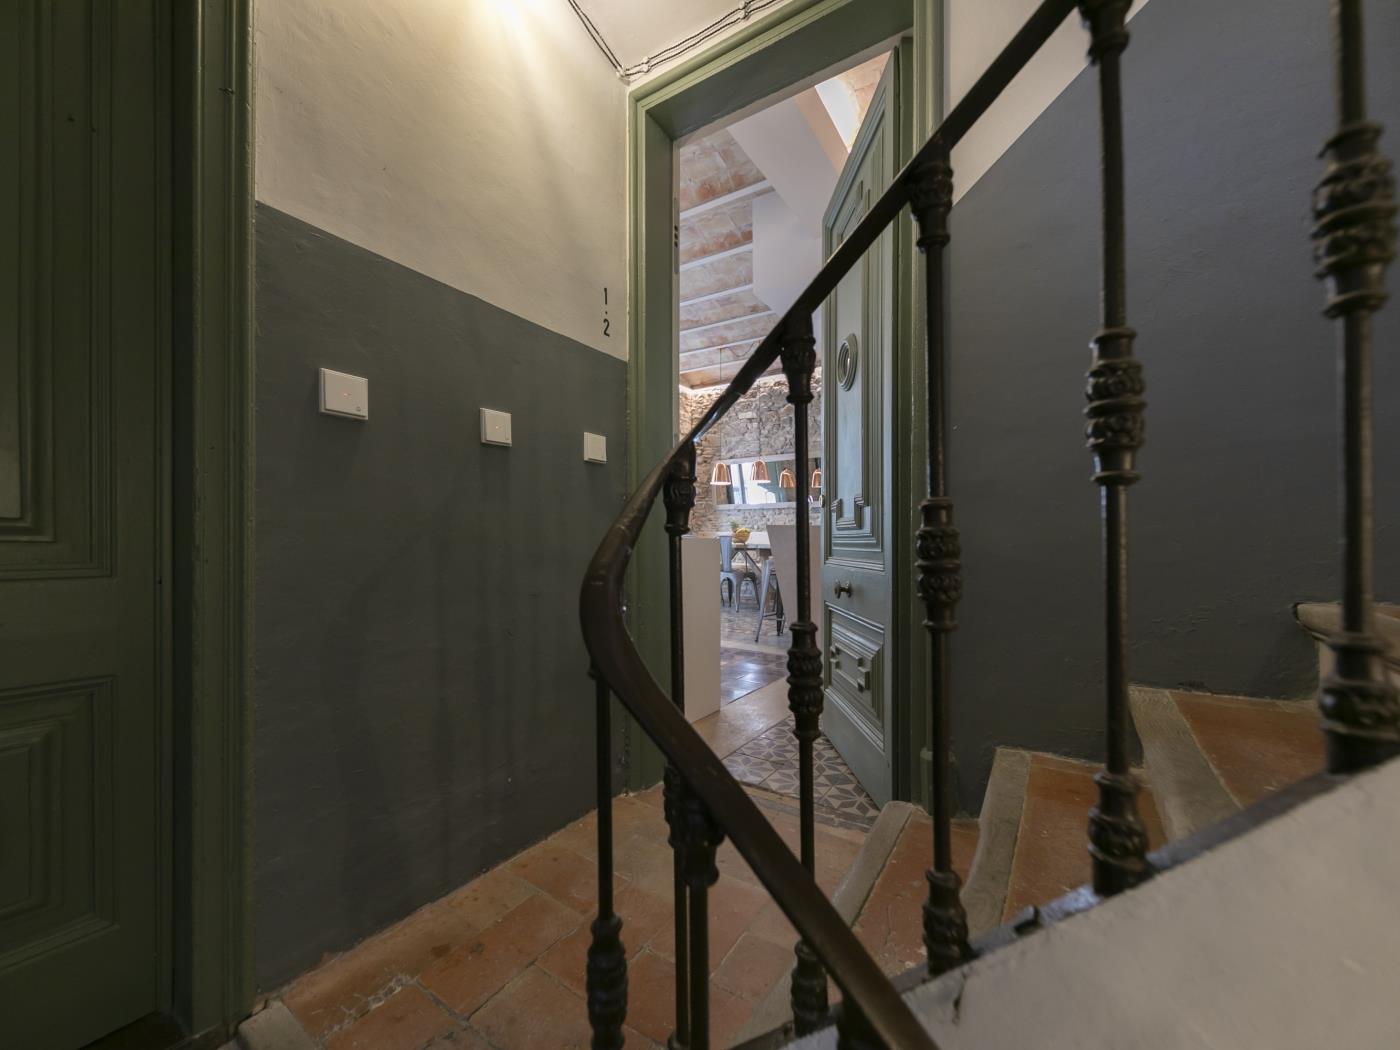 Mercaders 3 - Holiday apartment in Girona | Bravissimo in Girona